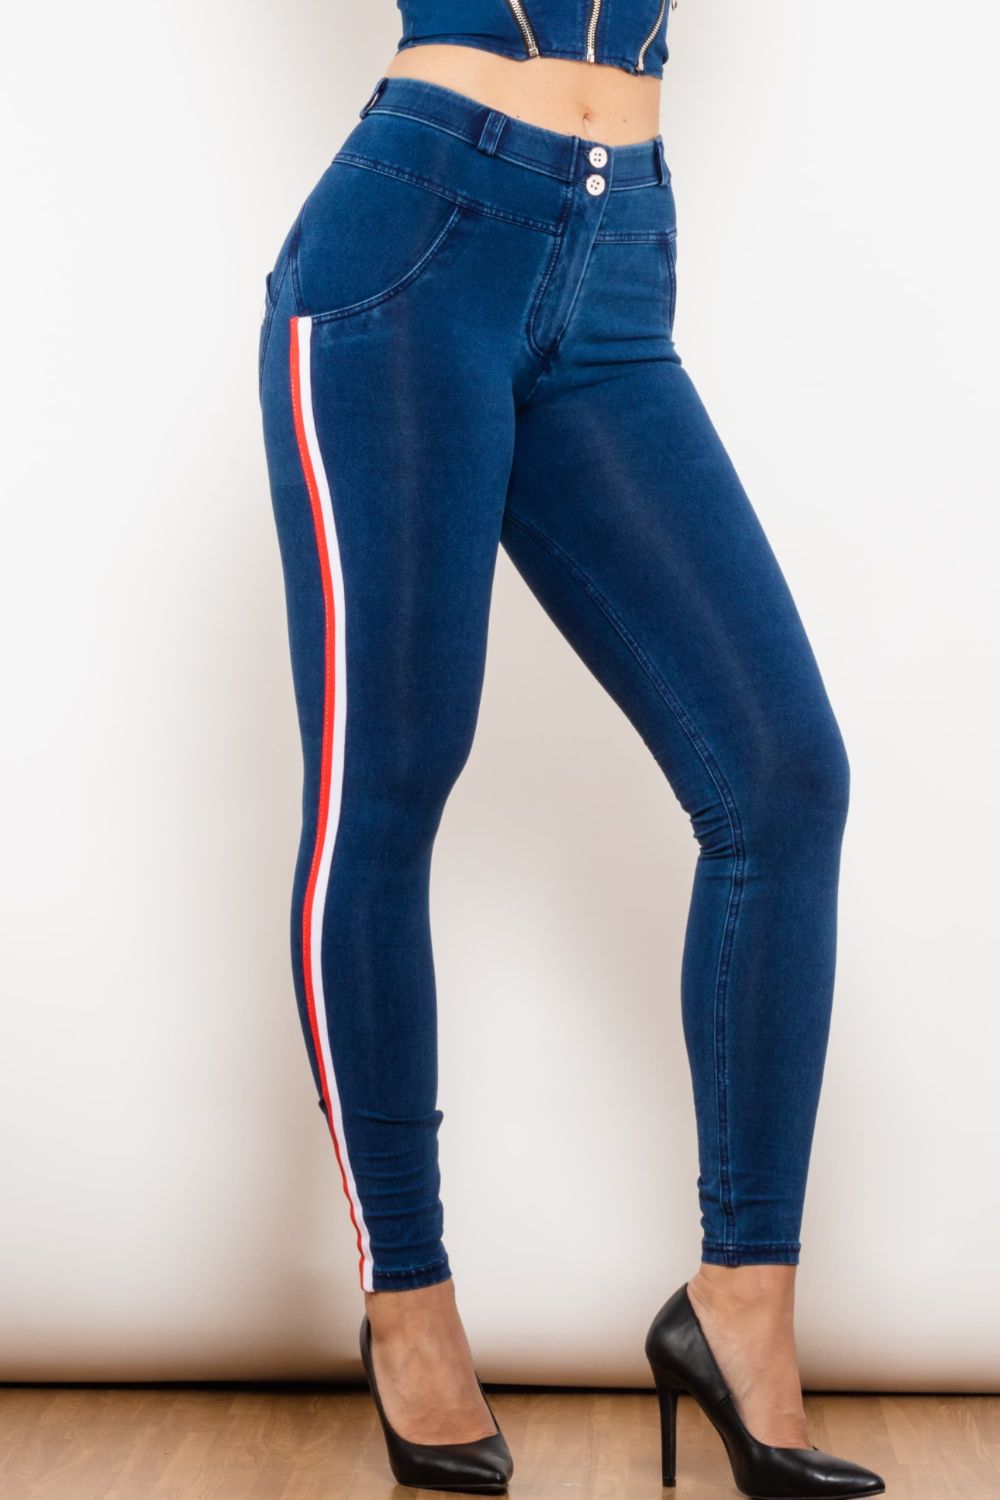 LLC Side – Jeans Flyclothing Skinny Stripe